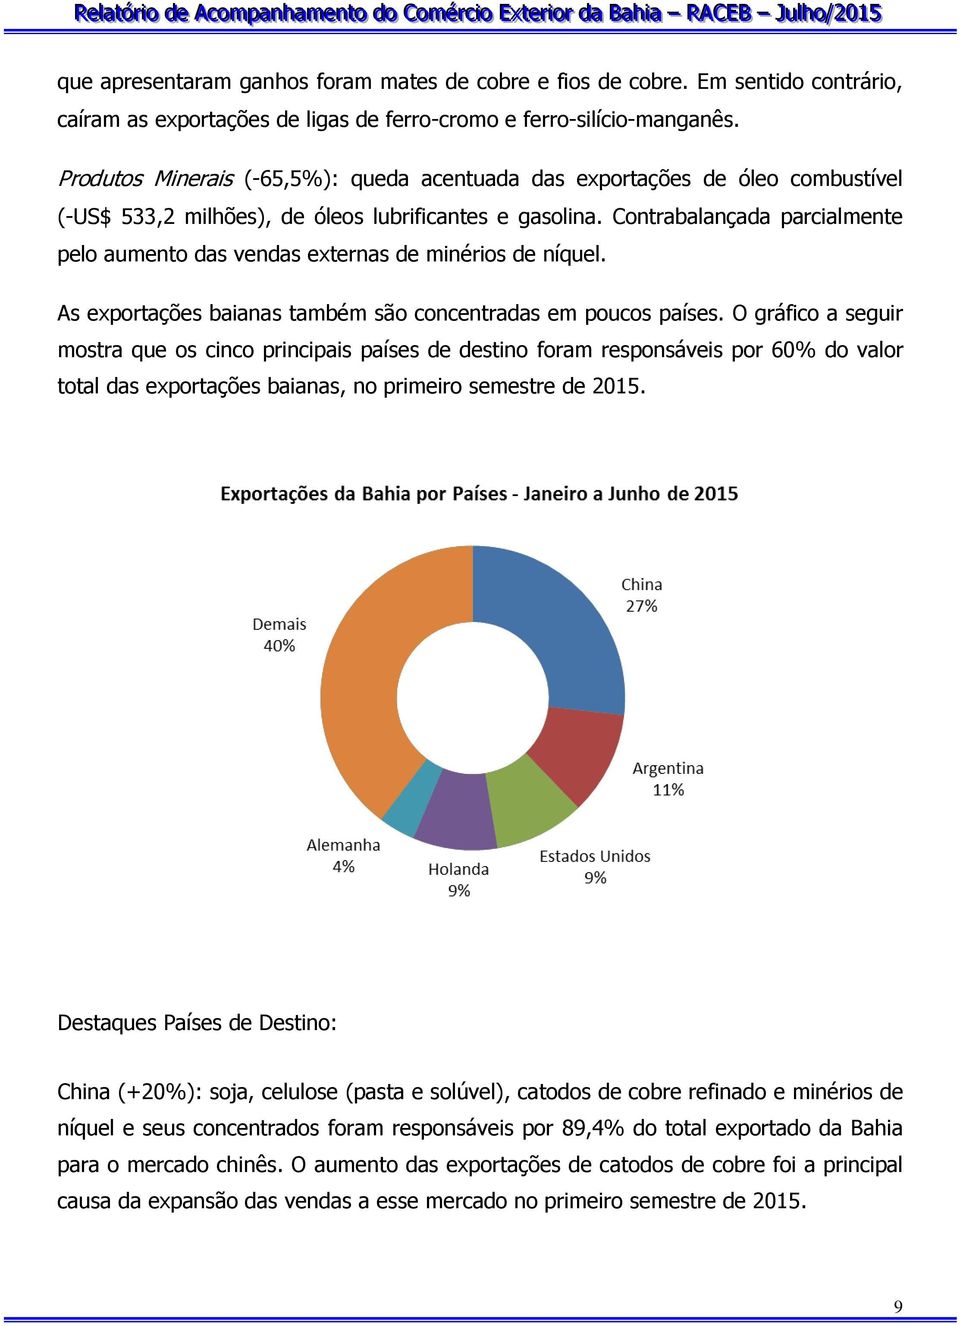 Contrabalançada parcialmente pelo aumento das vendas externas de minérios de níquel. As exportações baianas também são concentradas em poucos países.